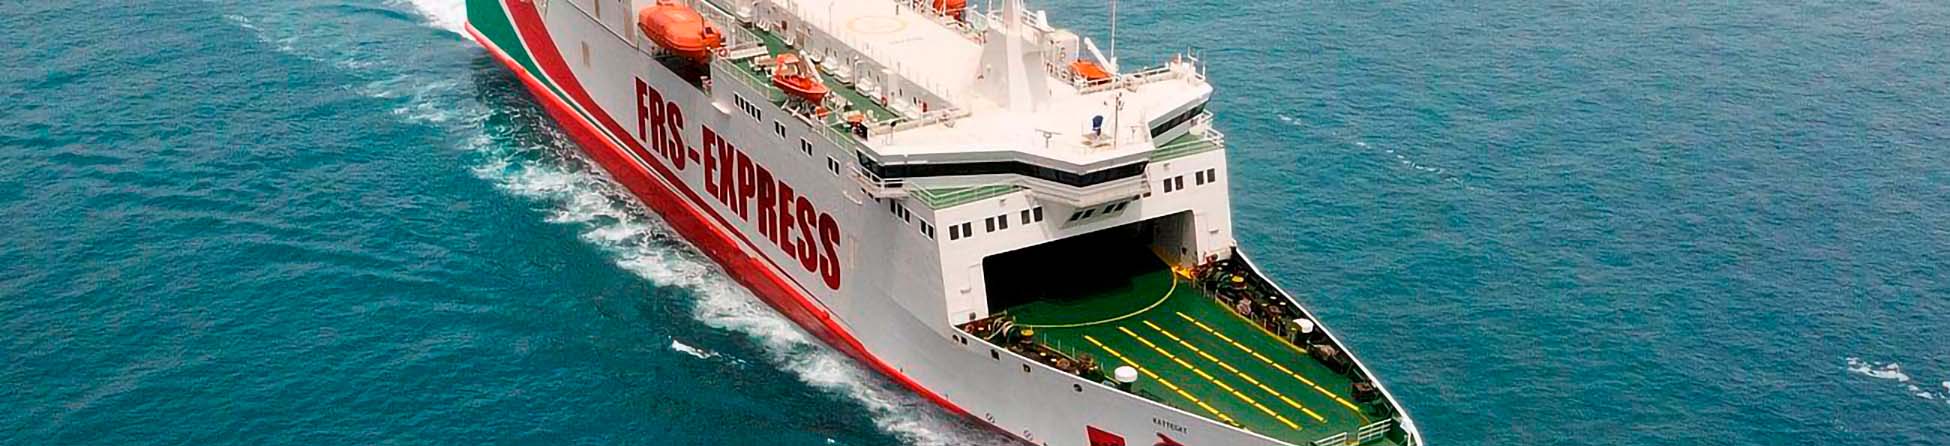 Immagine del porto di arrivo Algeciras per la rotta traghetto Tangeri Med - Algeciras